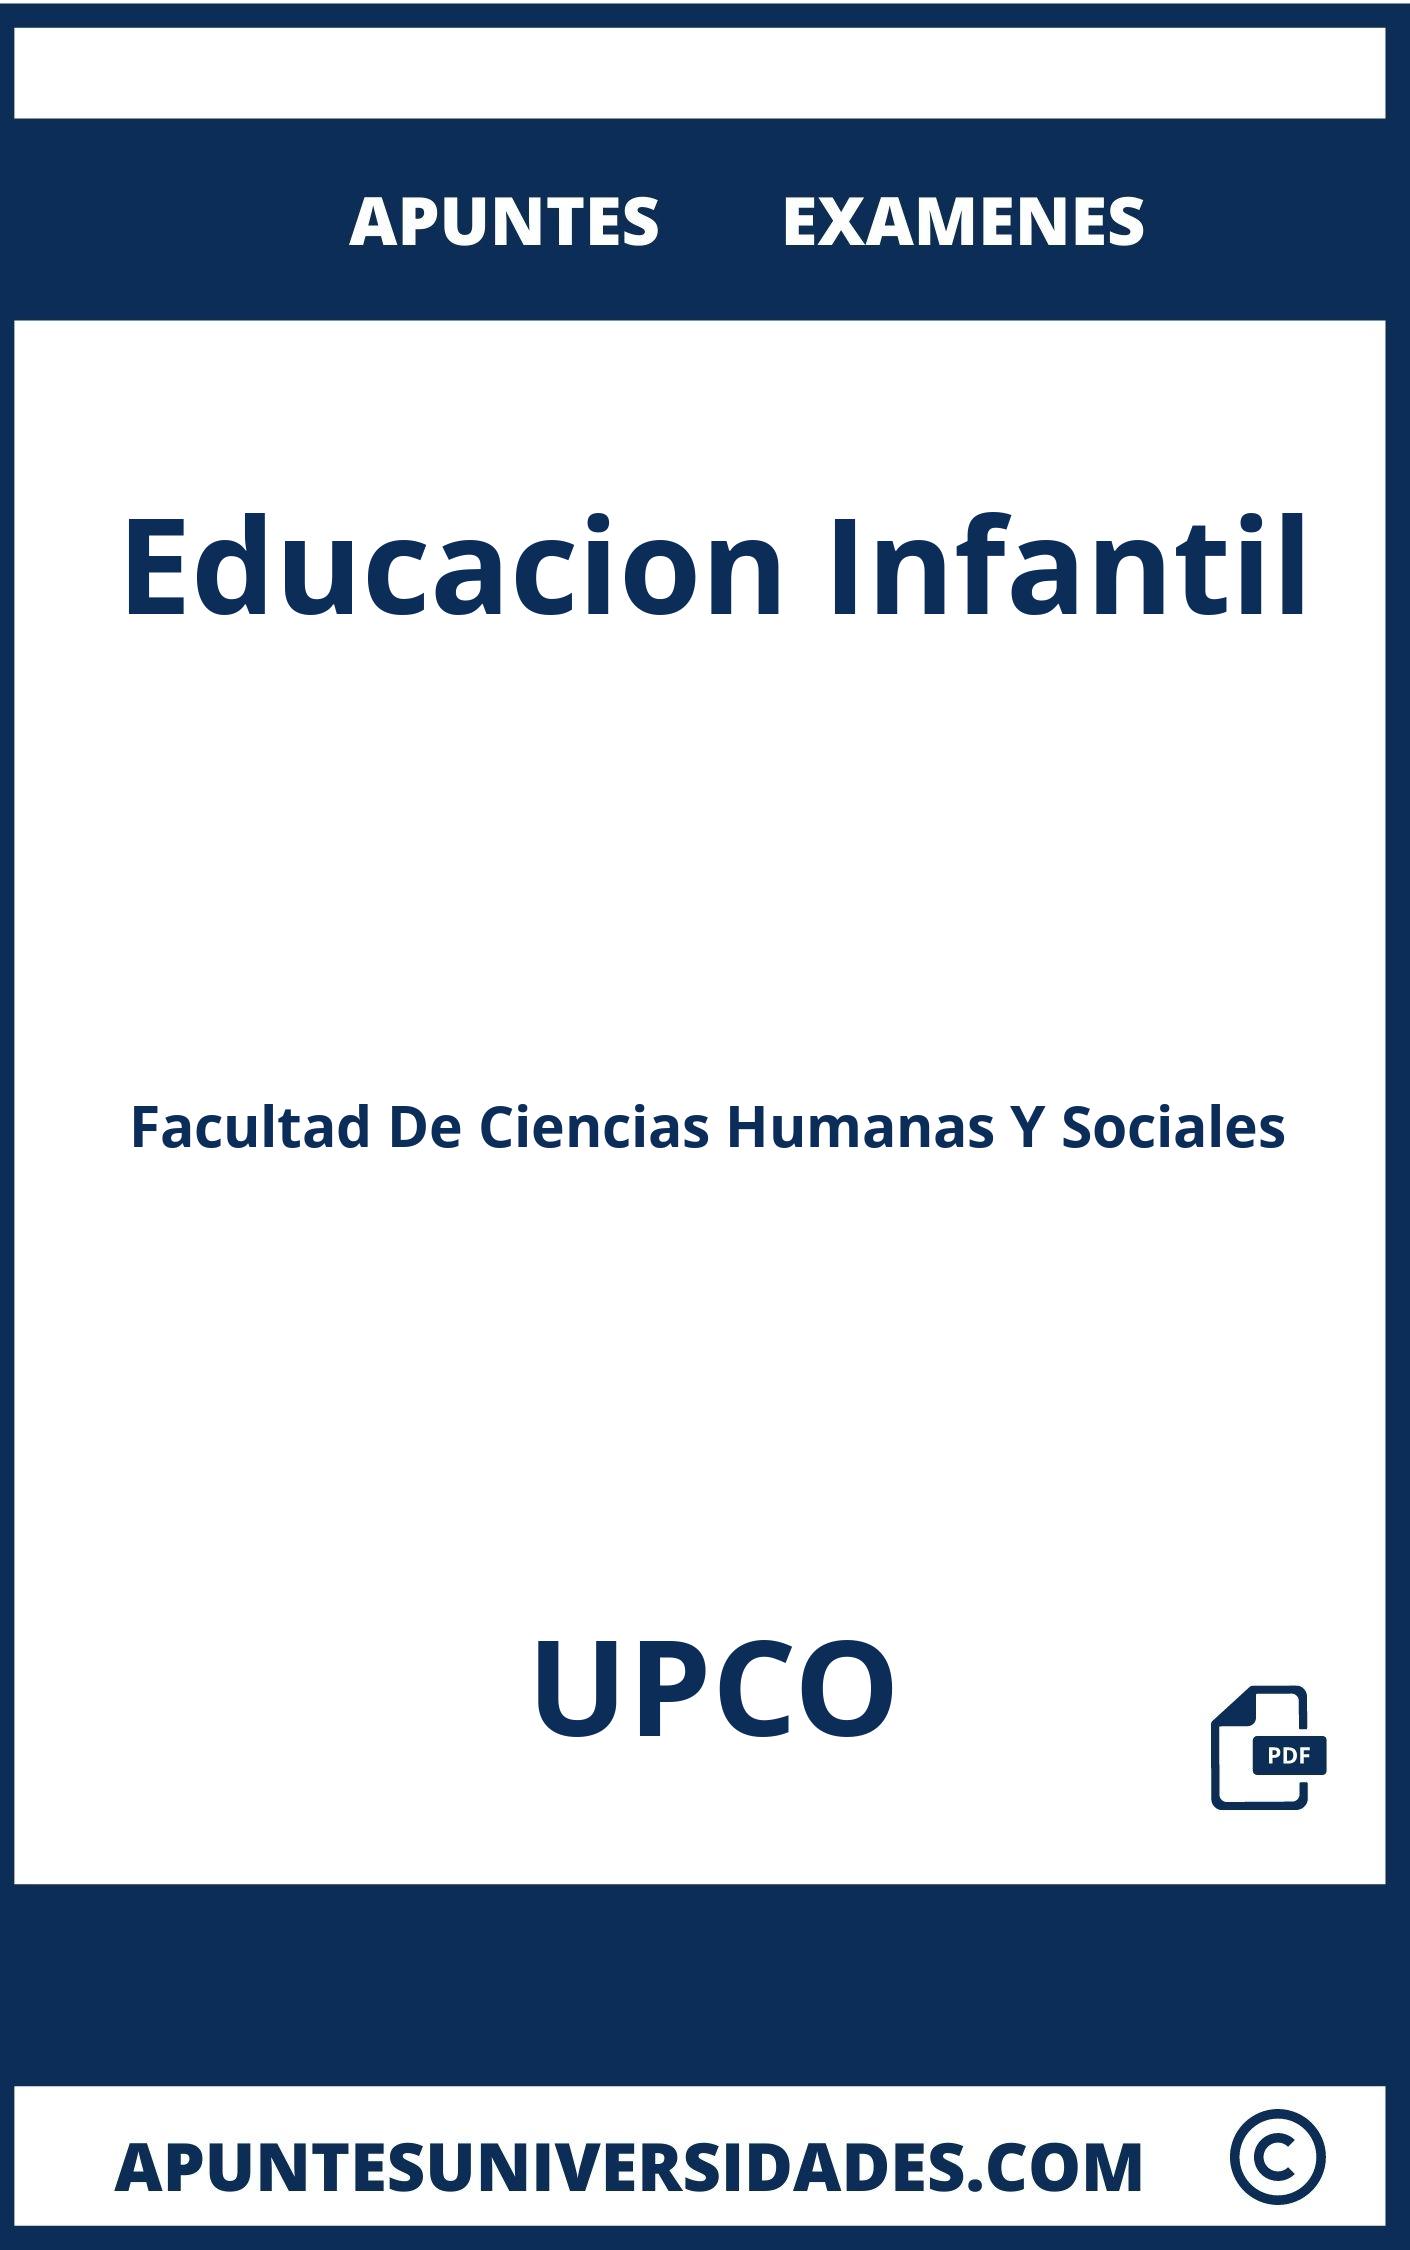 Apuntes y Examenes Educacion Infantil UPCO